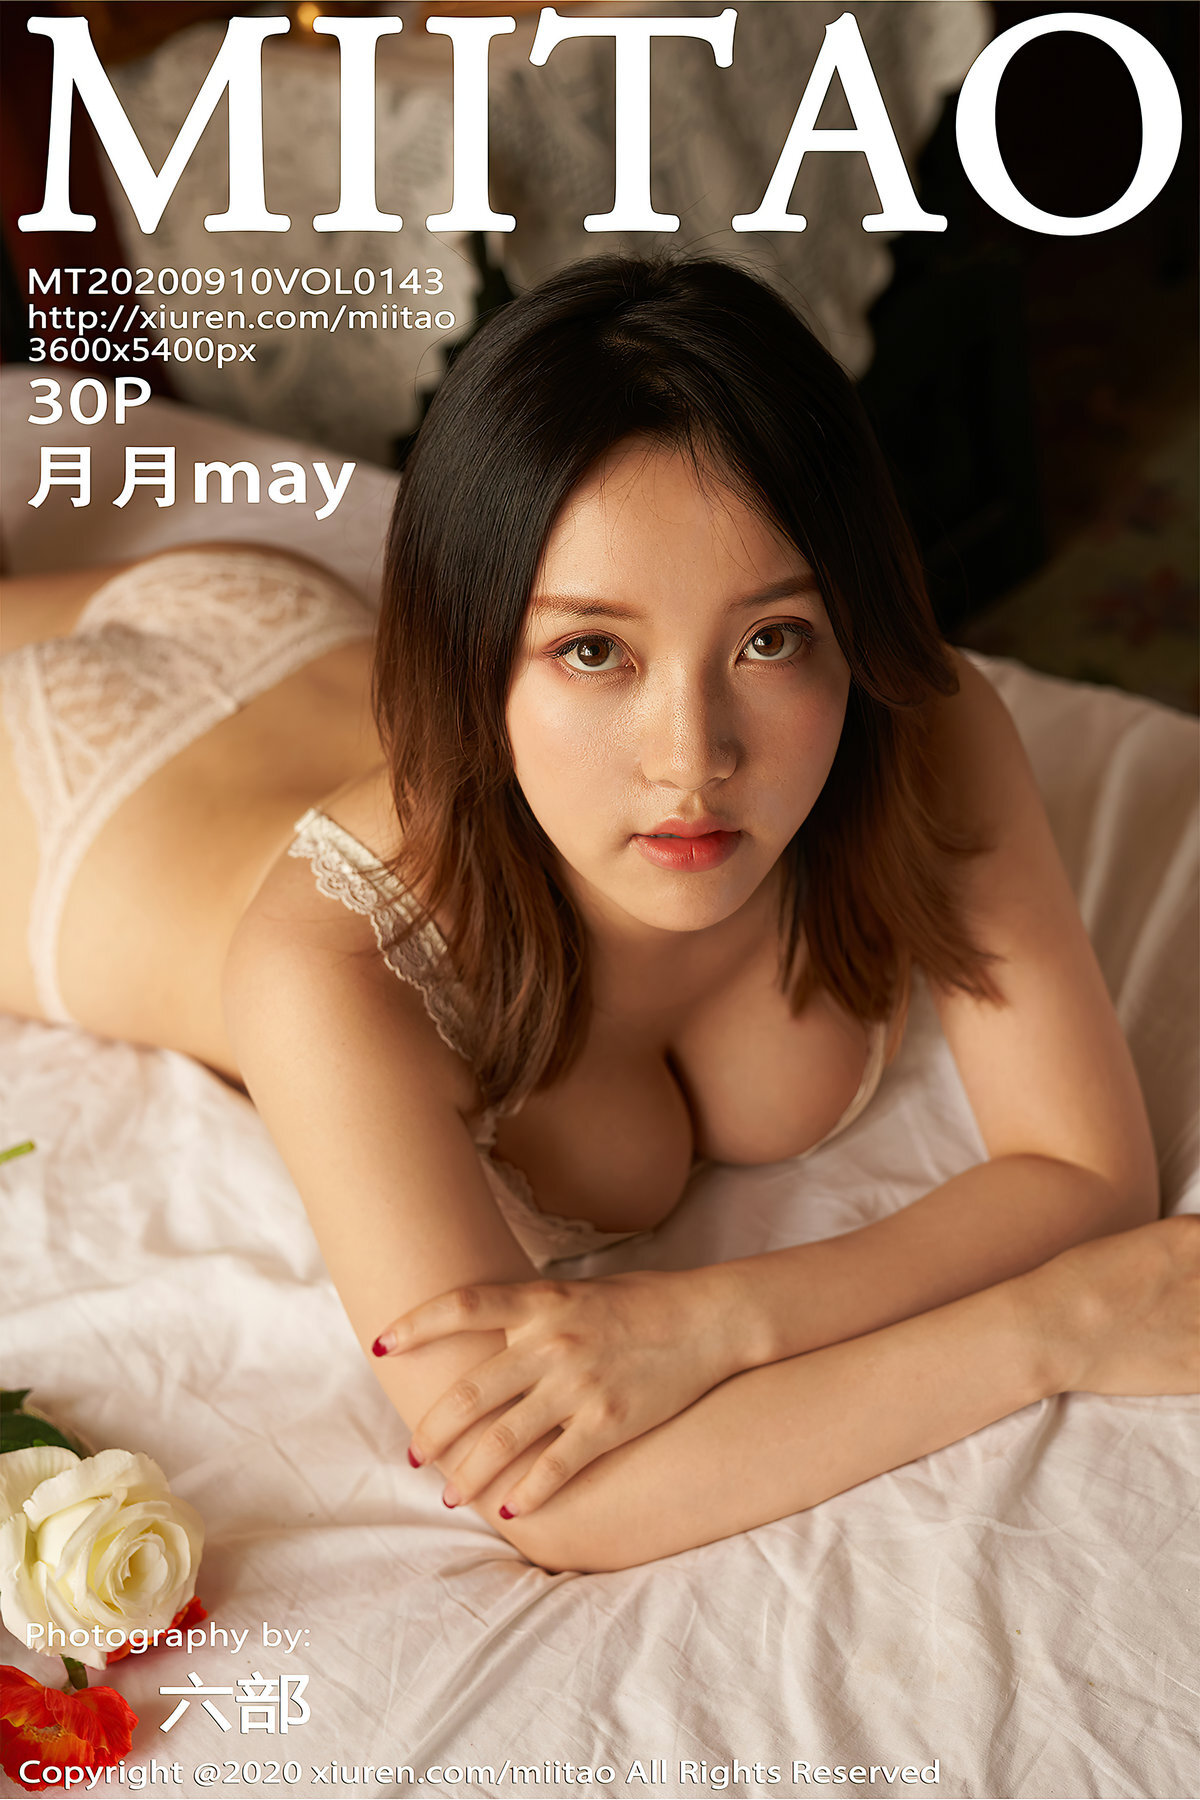 Miitao peach club 2020.09.10 Vol.143 may